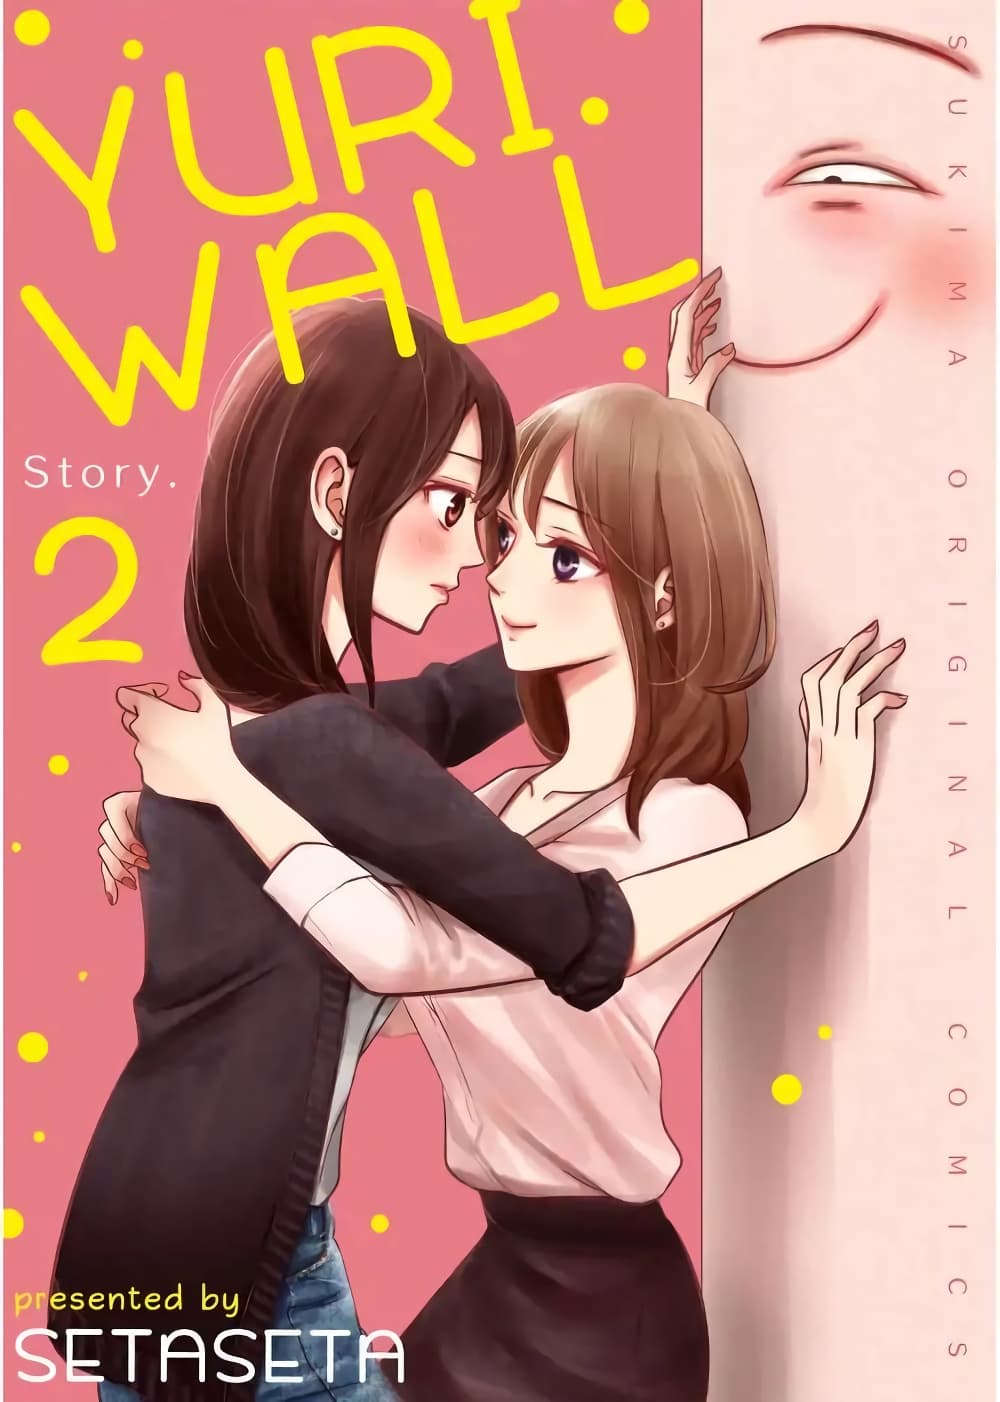 Yuri Wall 2 (1)